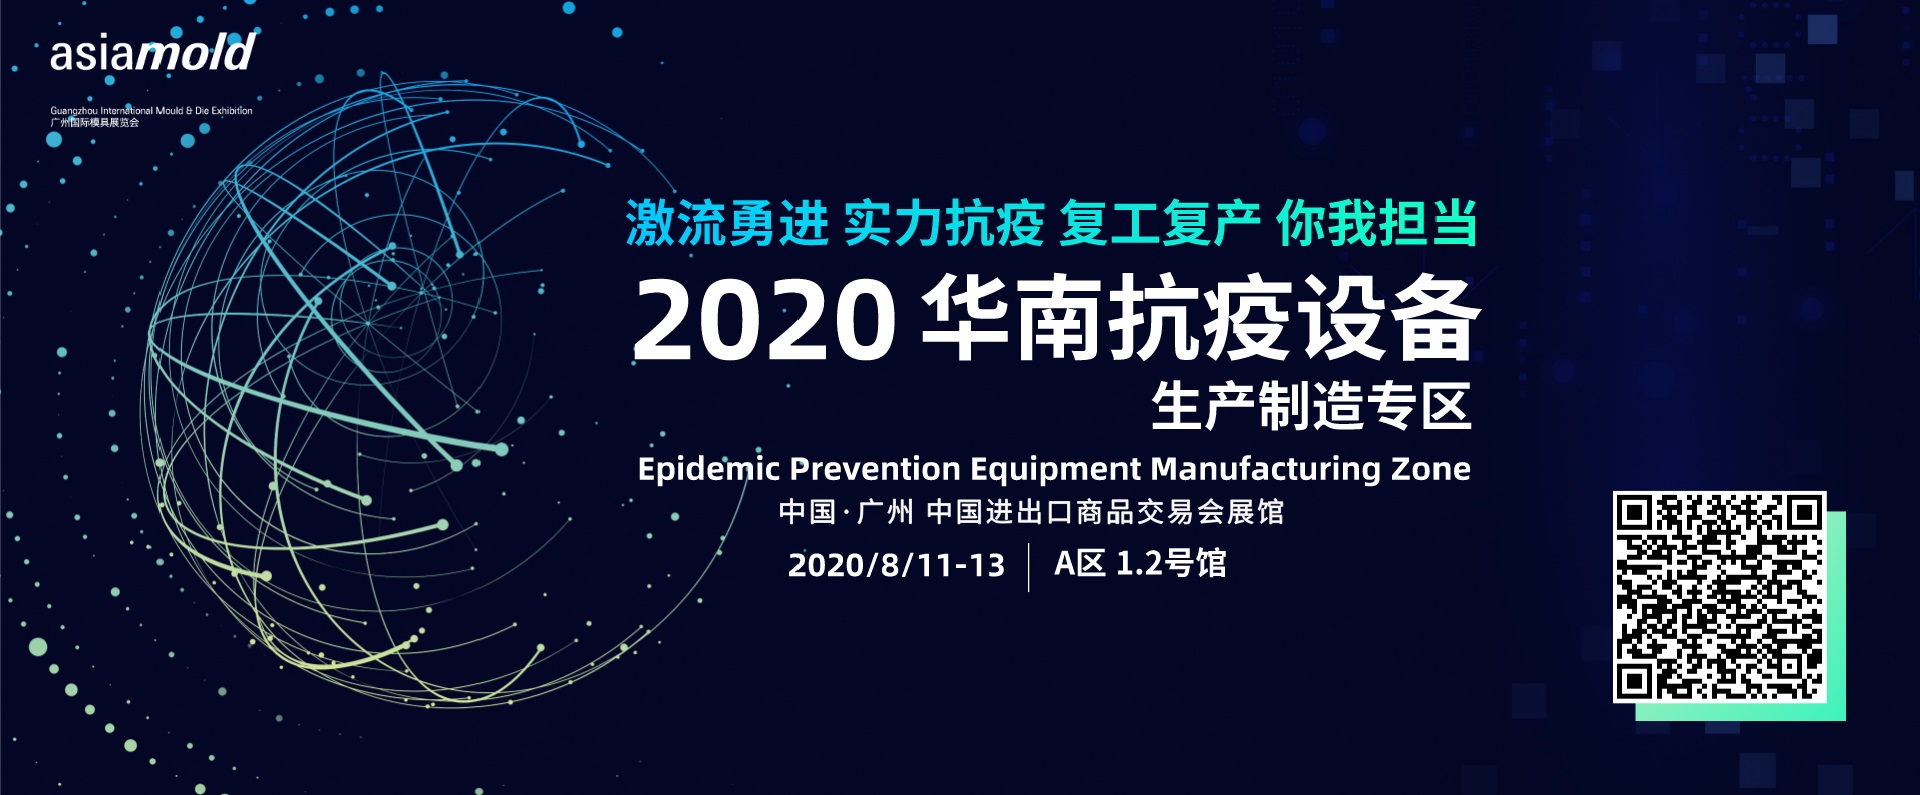 2020年广州国际模具展览会首设抗疫专区 齐心协力抗击新冠